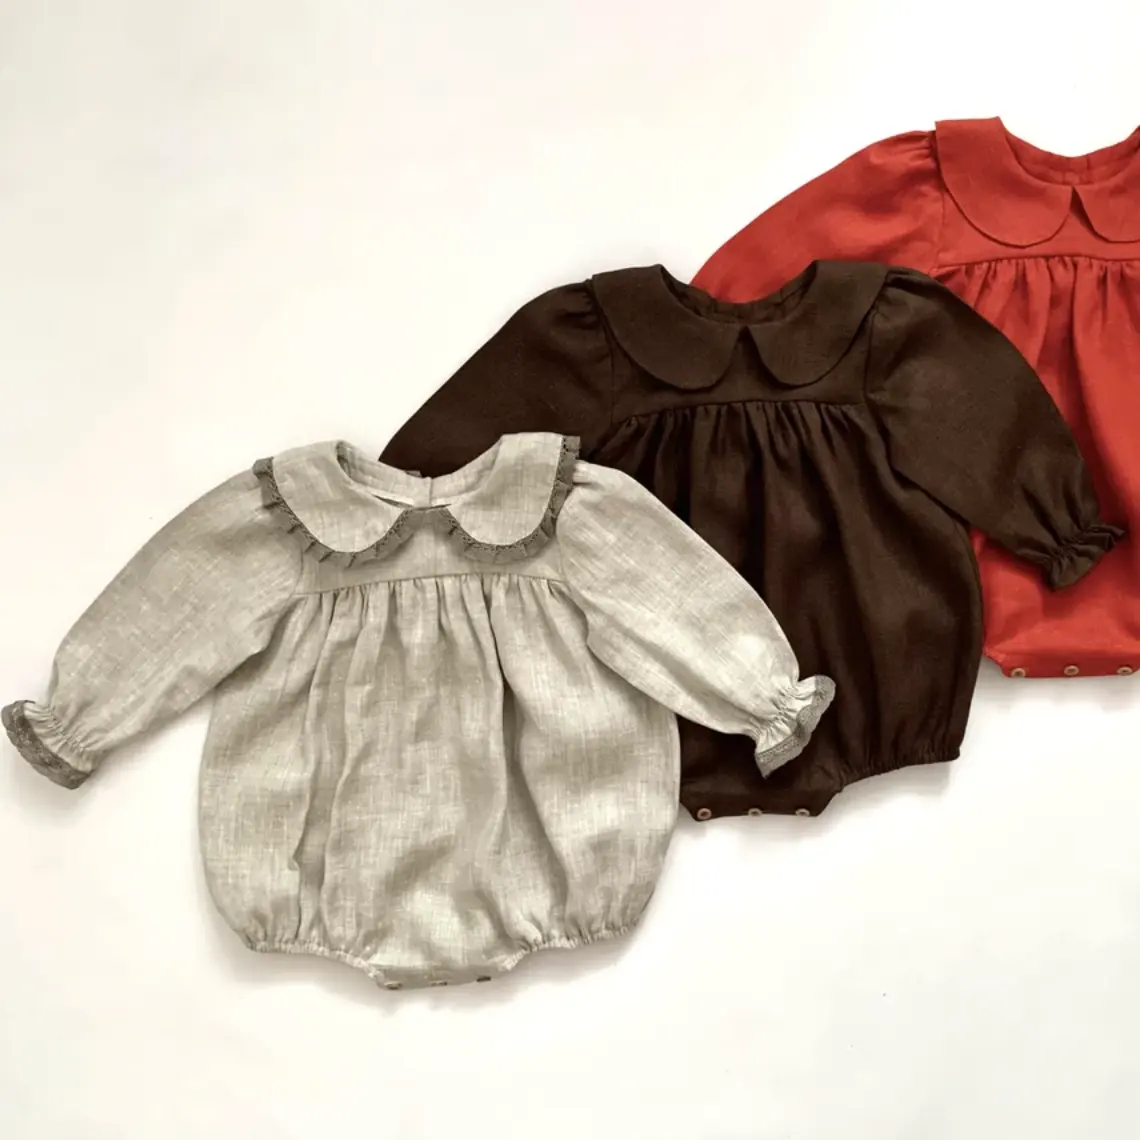 カスタマイズ可能な赤ちゃん100% リネンピーターパンカラーヴィンテージバースデーパーティージャンプスーツ